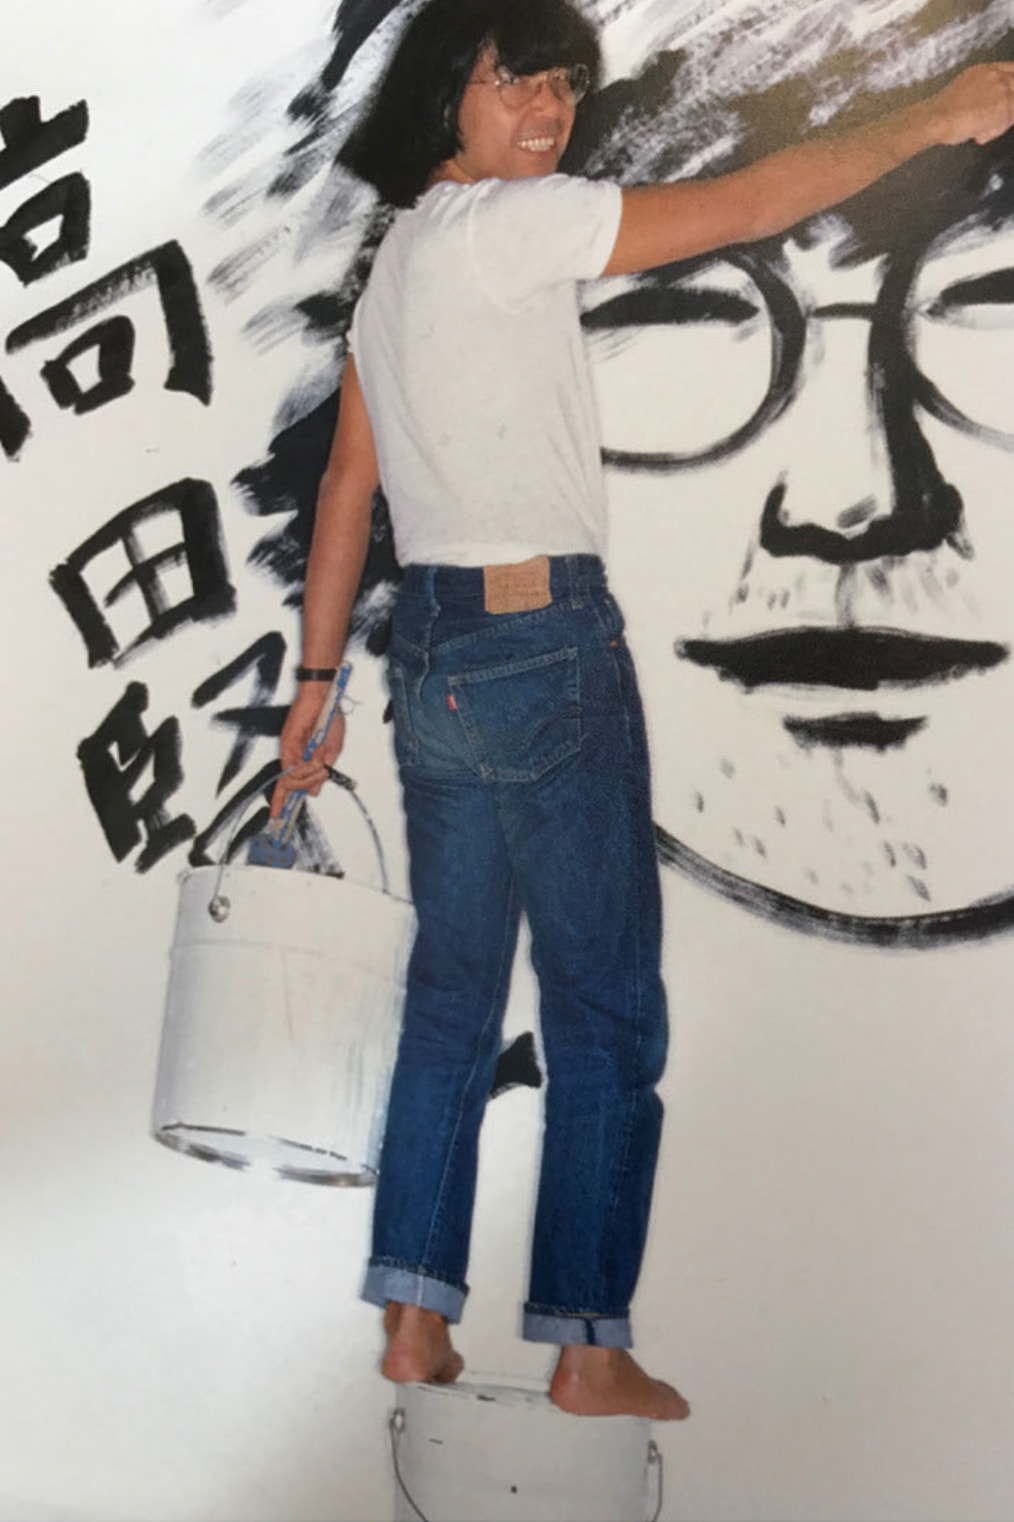 Kenzo Takada Japanese fashion designer Elle 1981 Oliviero Toscani